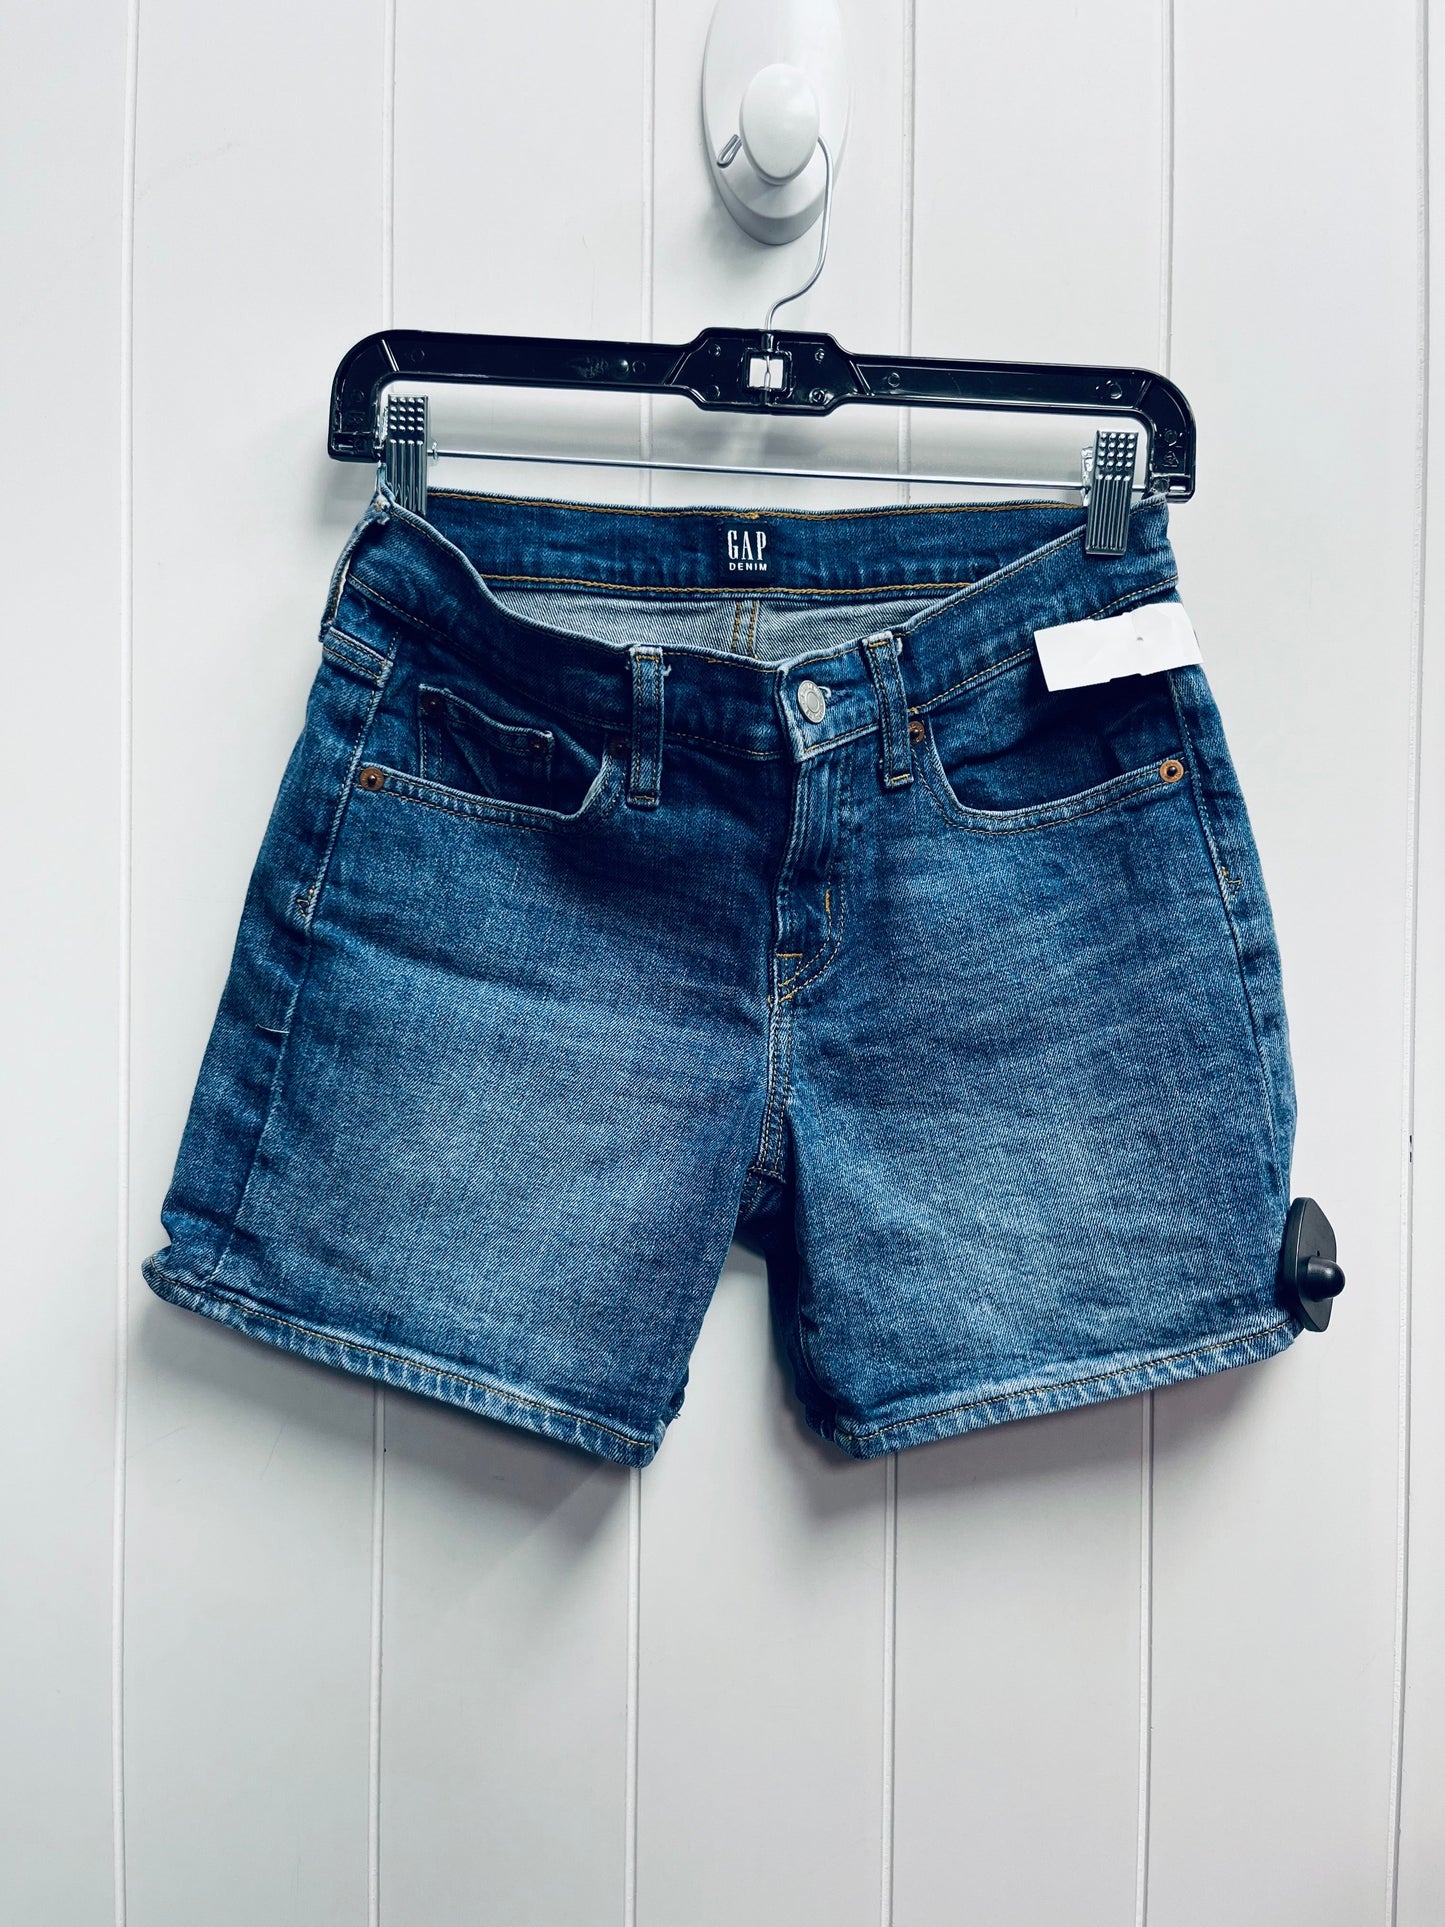 Blue Denim Shorts Gap, Size 0